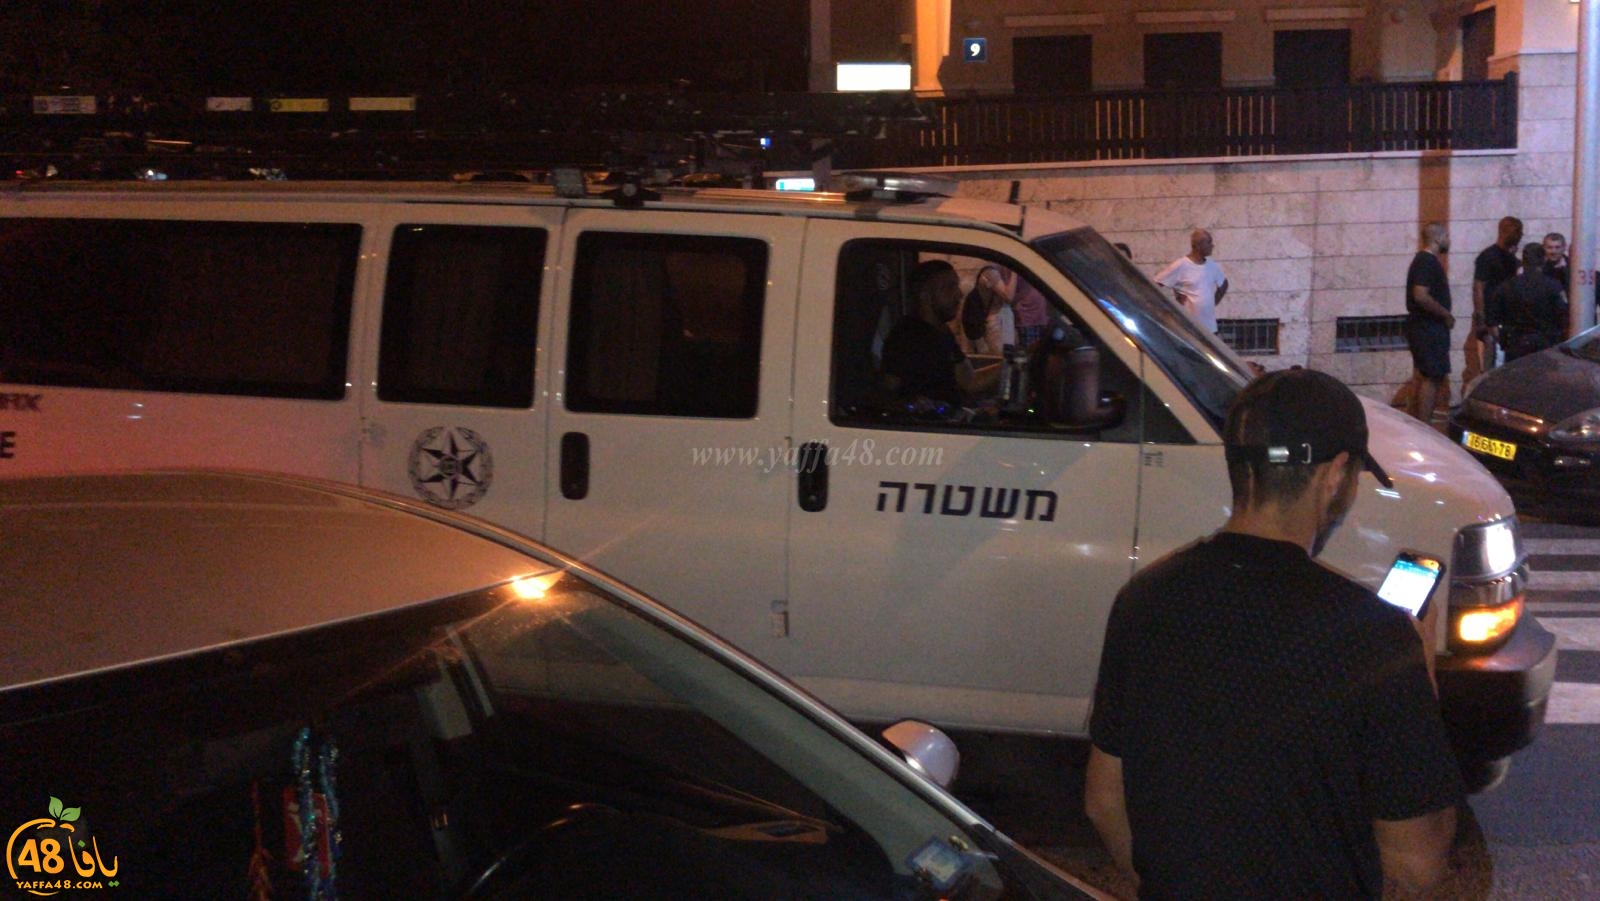  الشرطة تُطارد سائق مركبة في مدينة يافا وتعزز من تواجدها في المنطقة